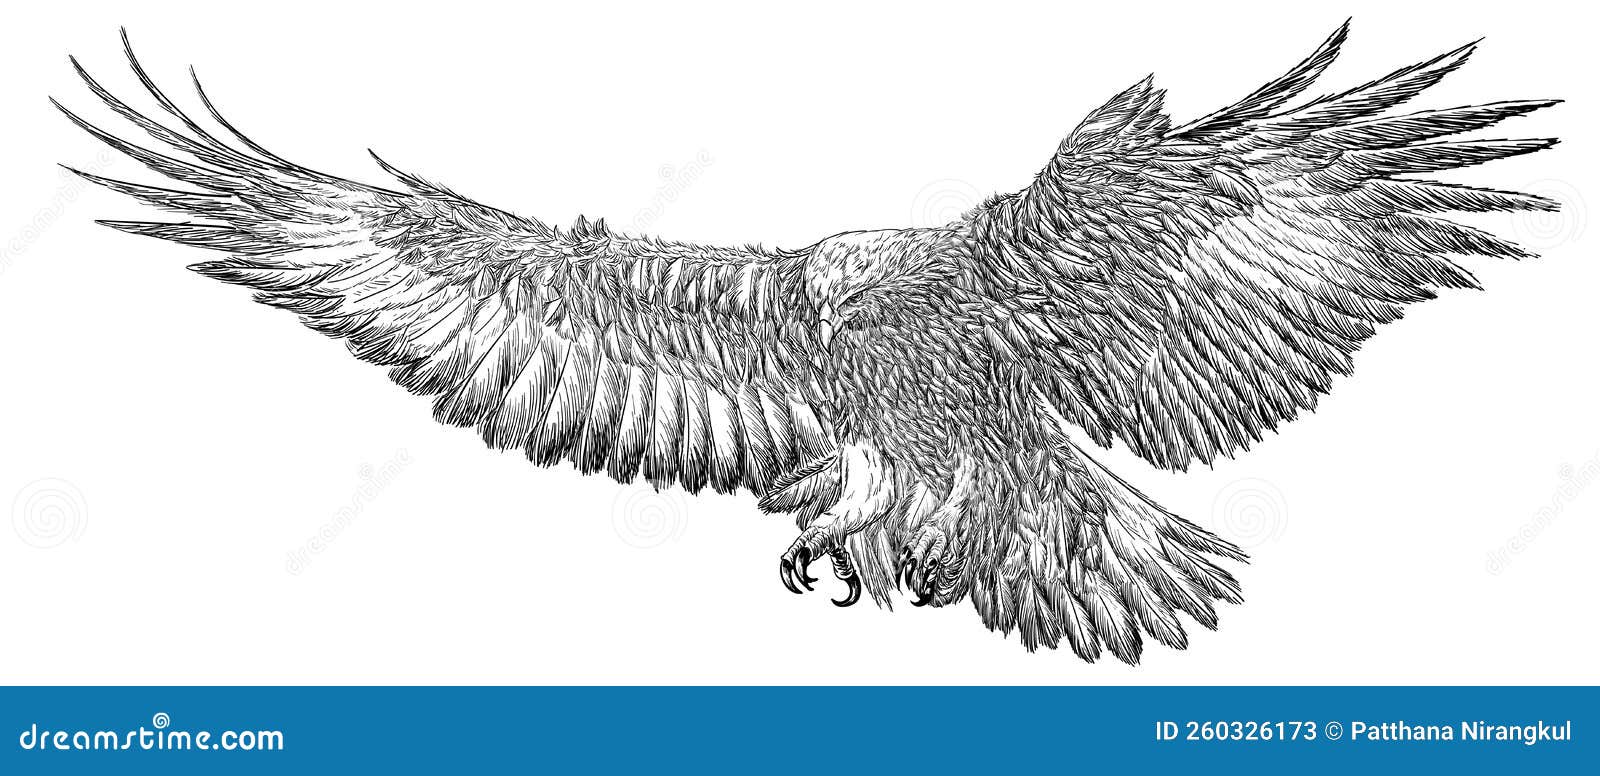 golden eagle landing hand draw sketck black line doodle on white background 